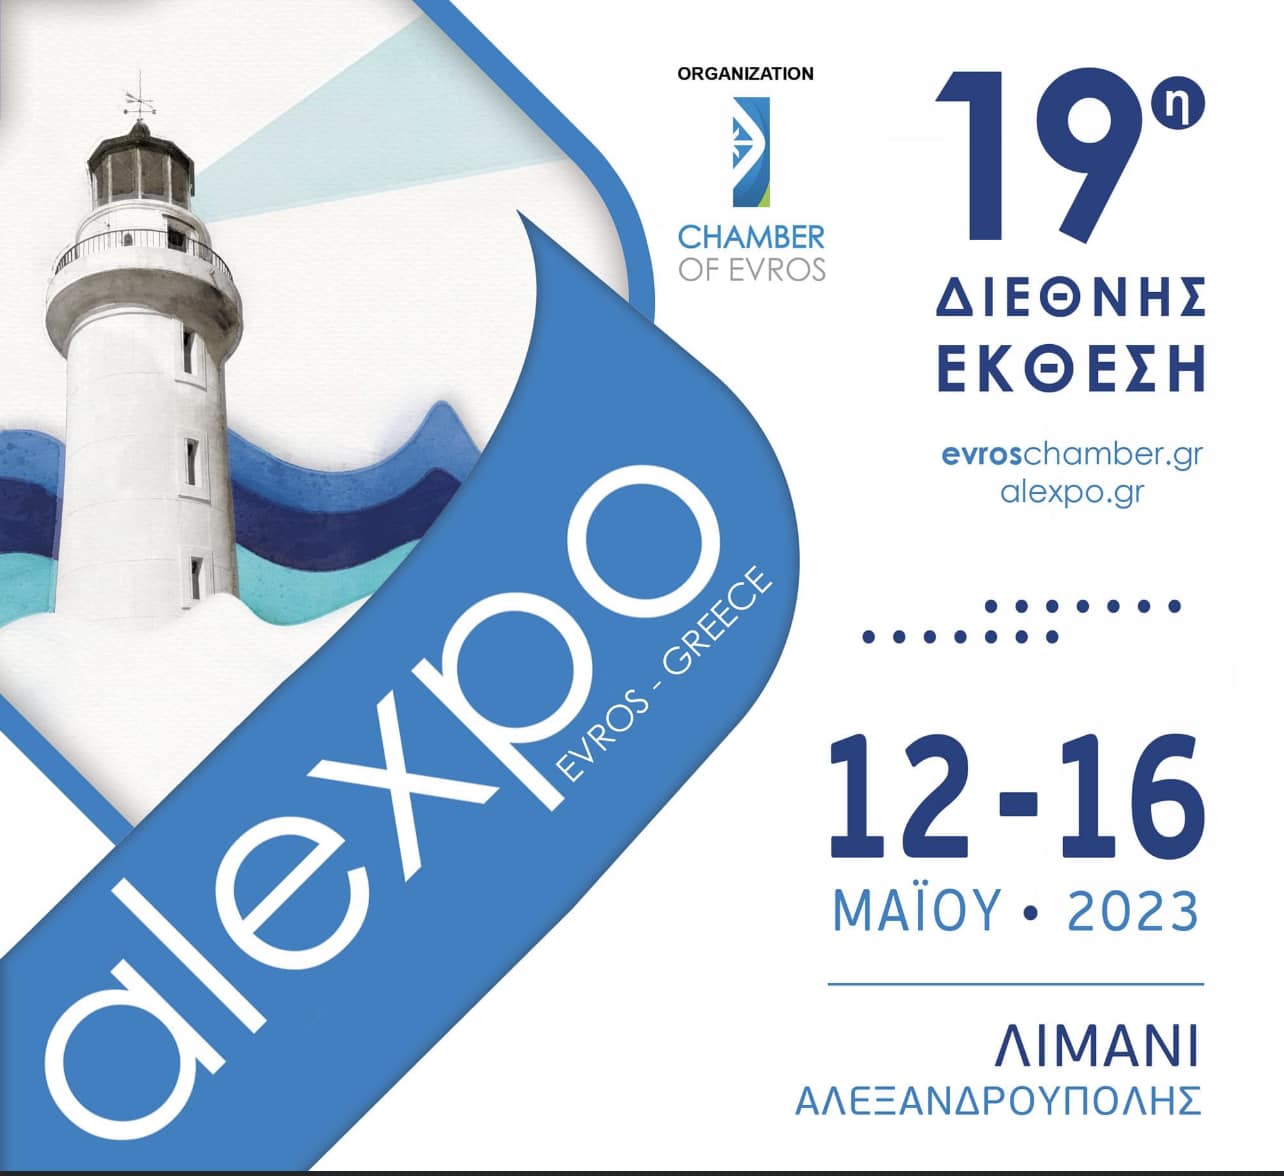 19th INTERNATIONAL EXHIBITION OF ALEXANDROUPOLI “alexpo 2023” MAY 12-16 (January 26, 2023)